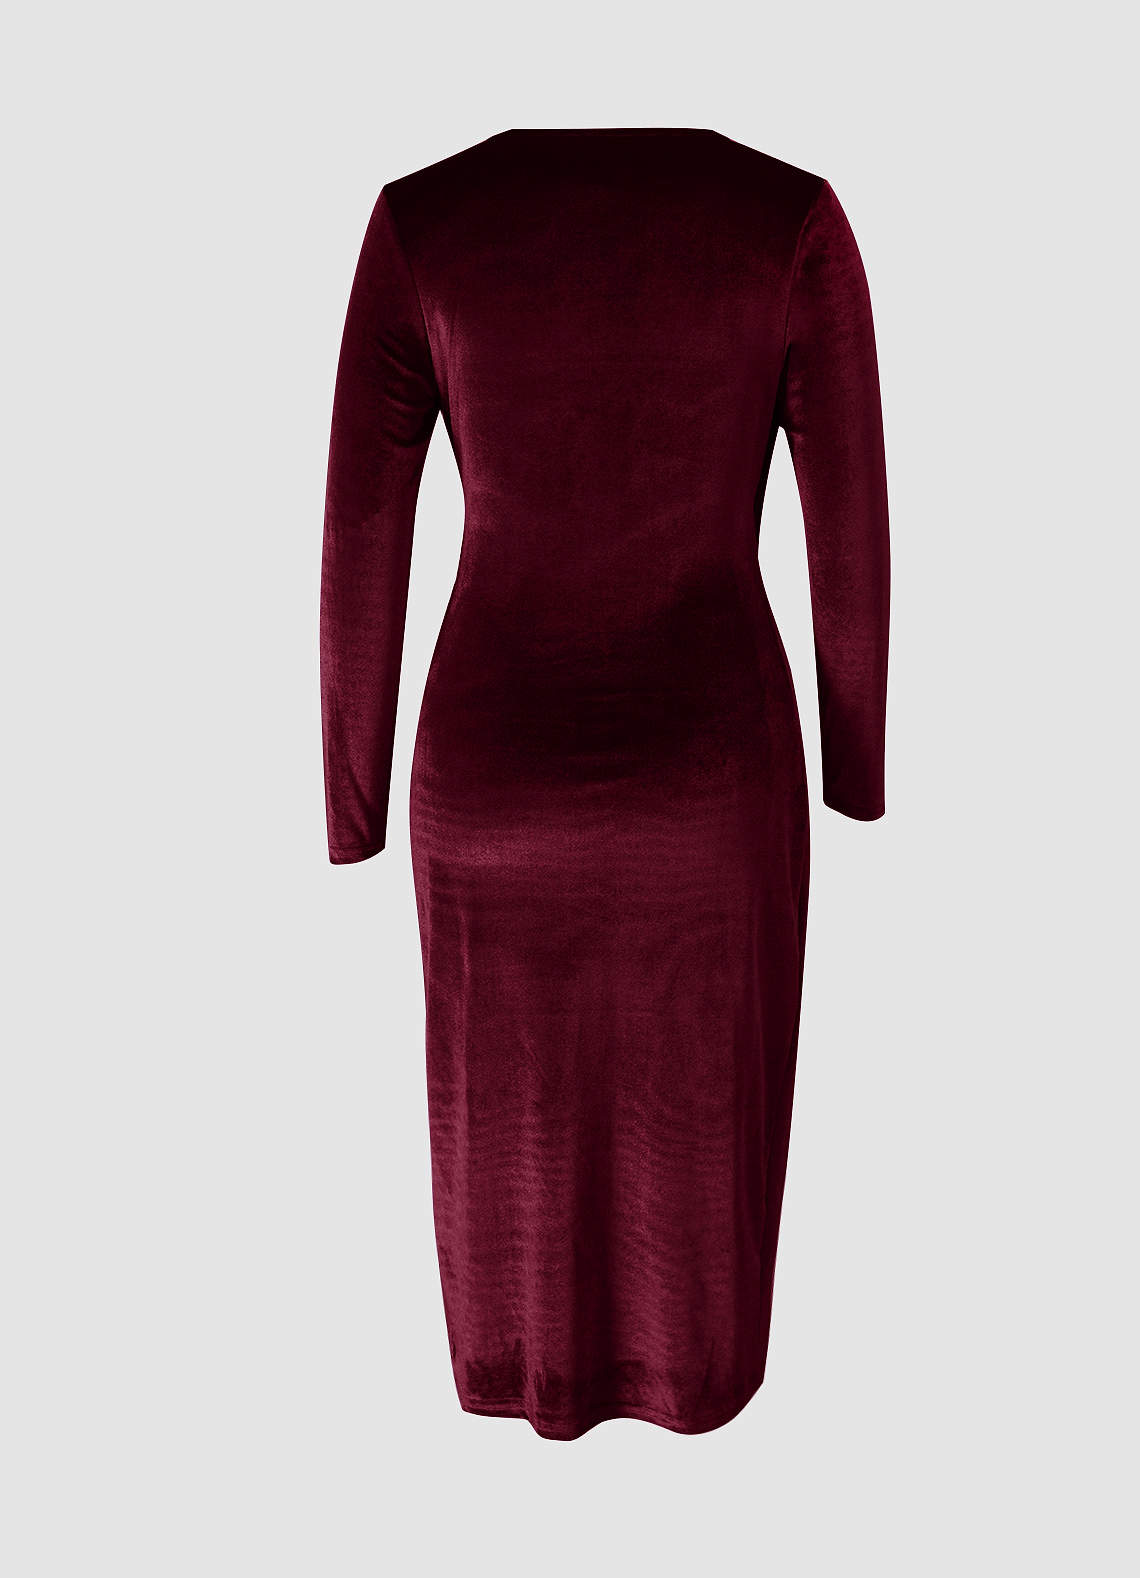 Going For Glamour Burgundy Velvet Long Sleeve Midi Dress image1